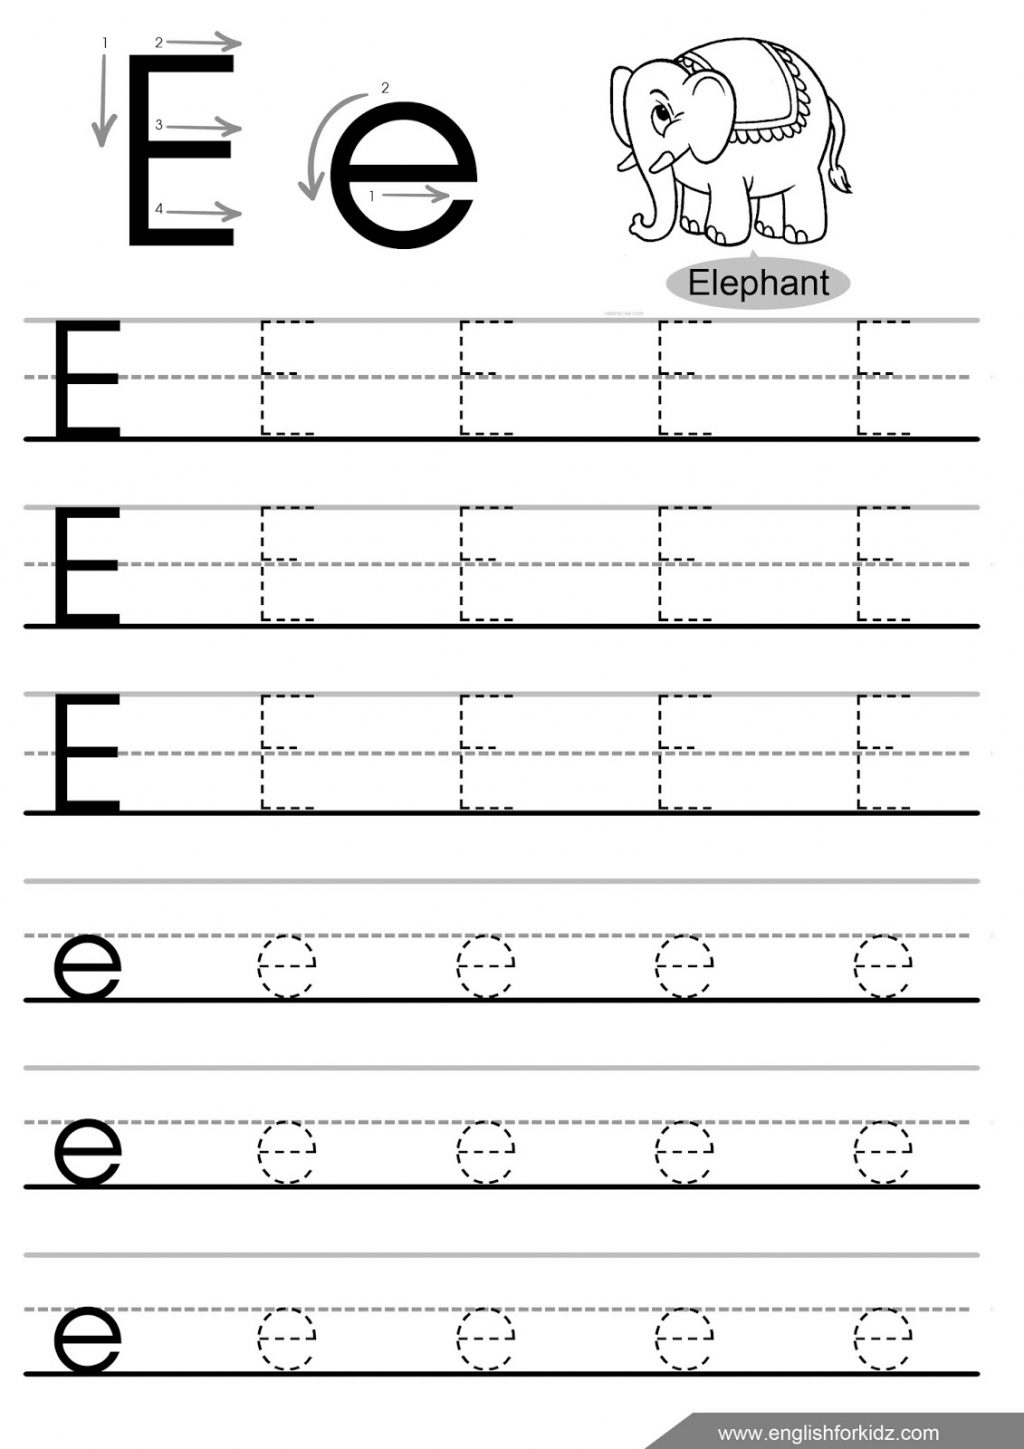 Best Of Preschool Letter E Worksheet | Educational Worksheet in Letter E Worksheets For Preschool